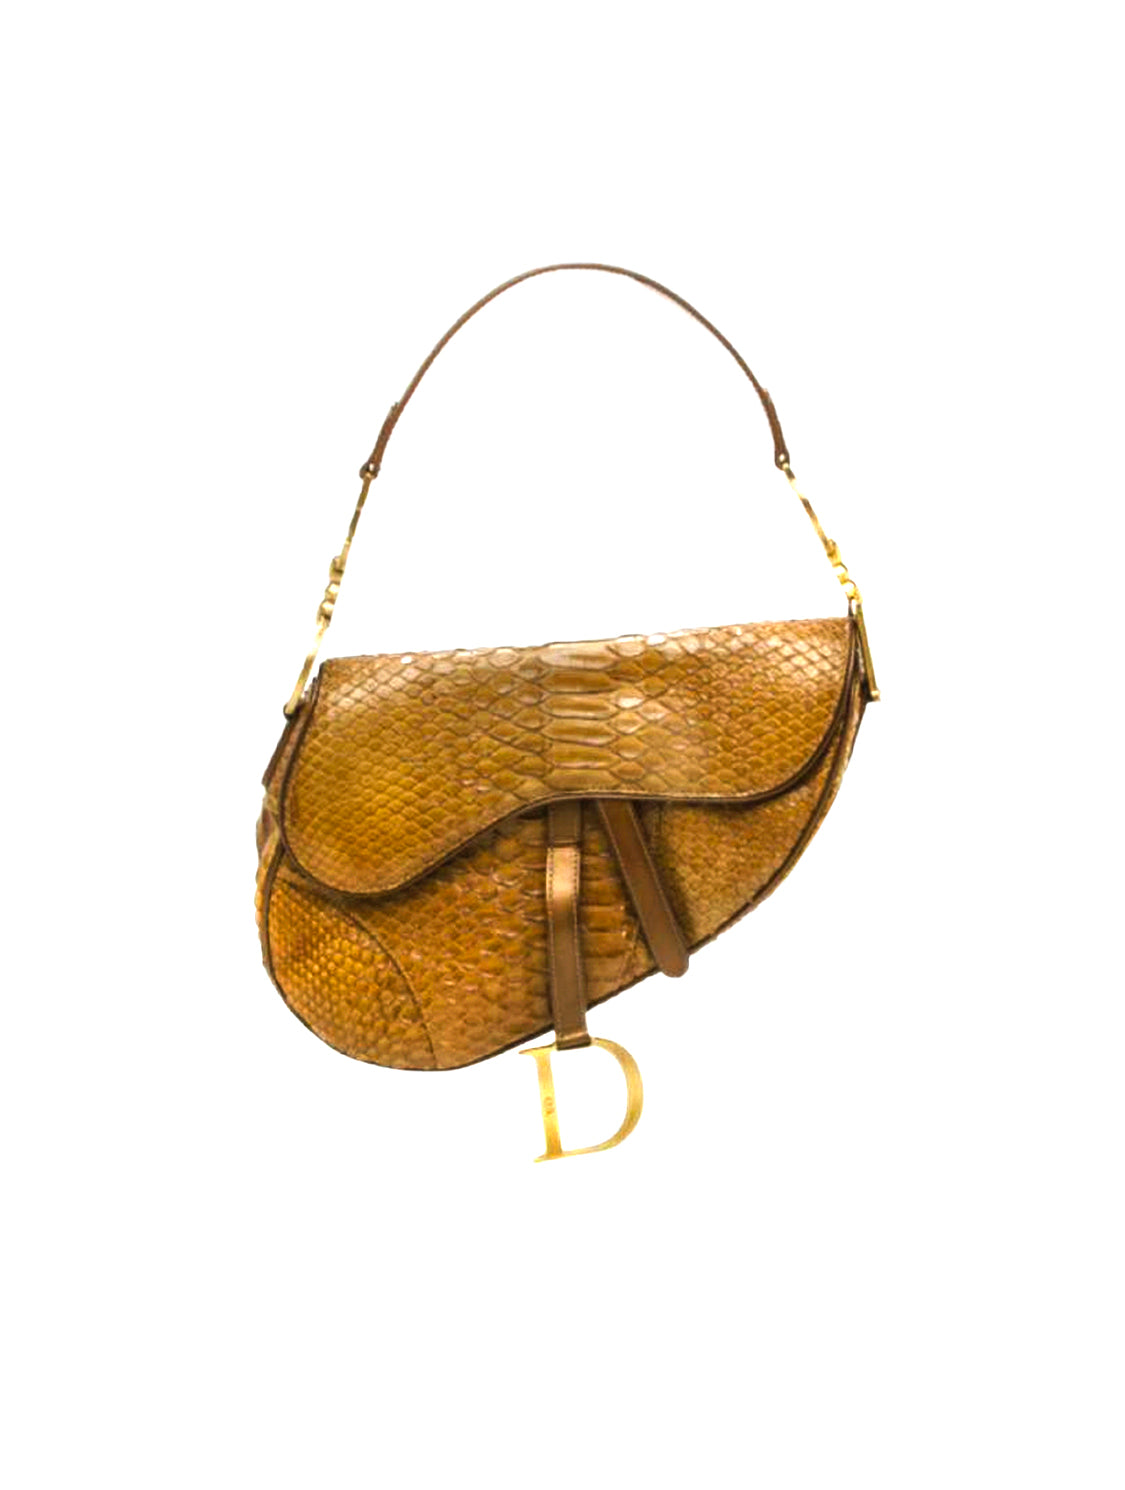 Christian Dior 2000s Brown Python Small Saddle Bag